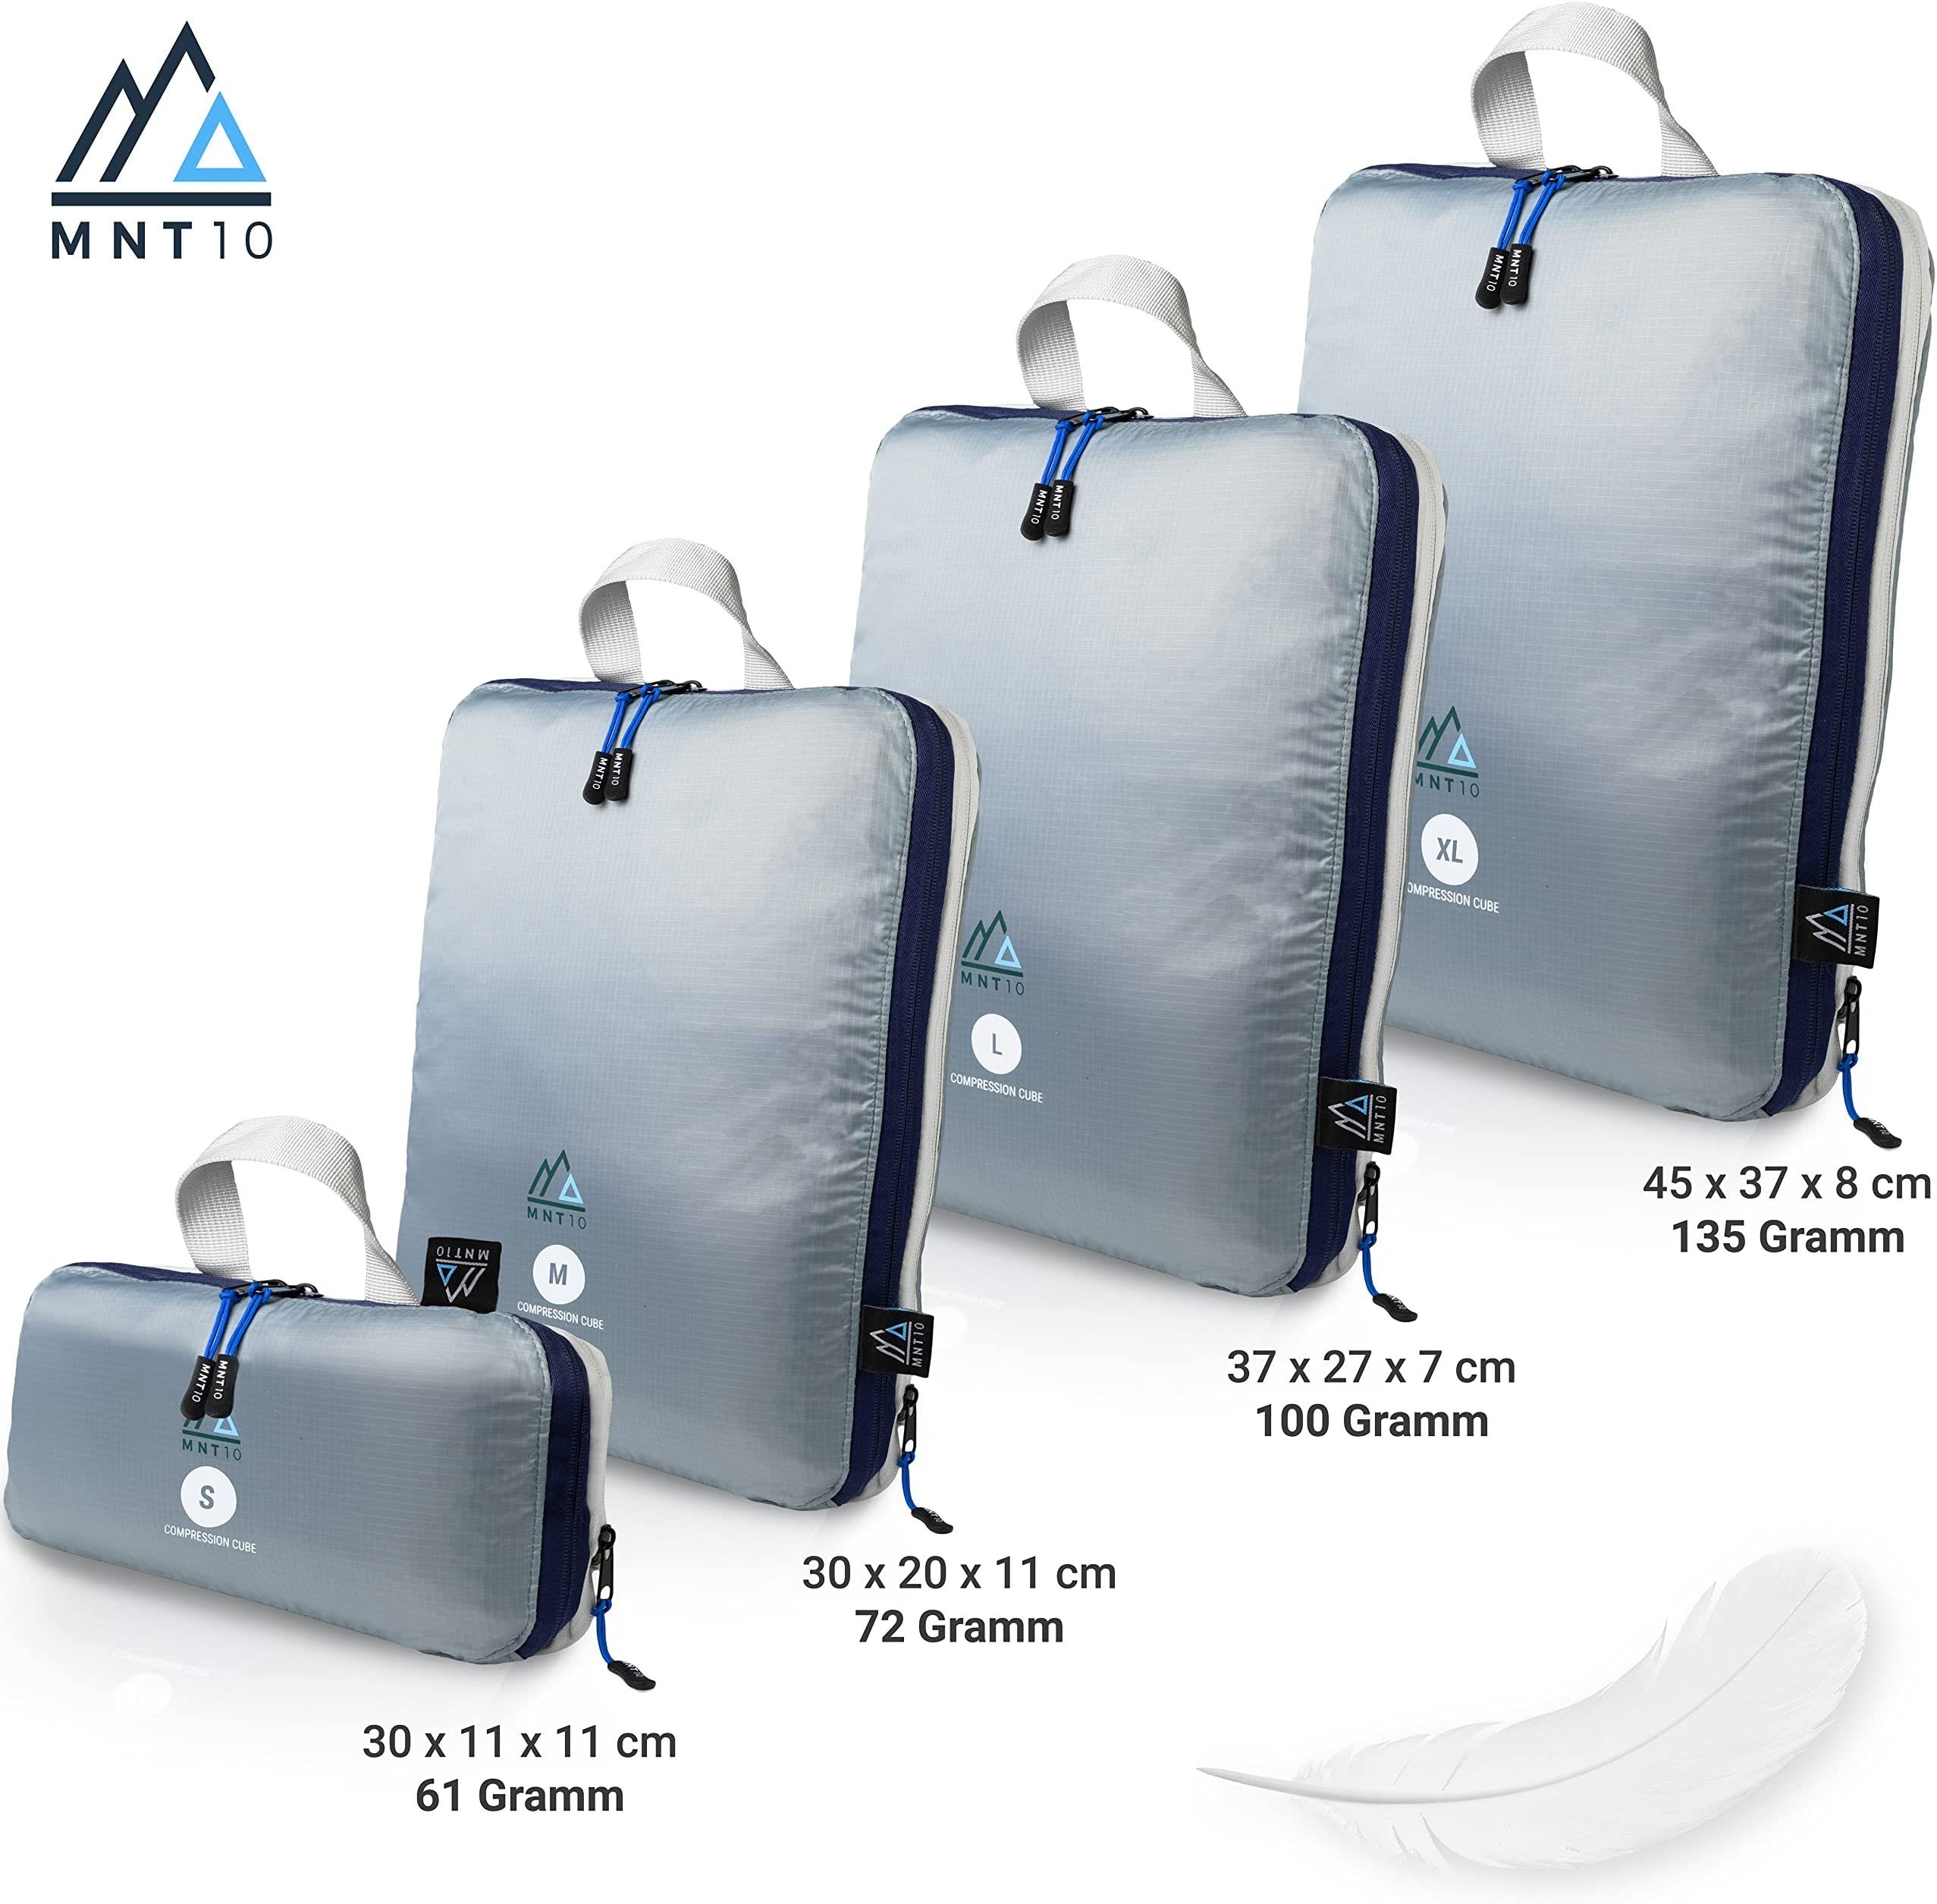 Kompressionsbeutel, MNT10 leichte Packtaschen Taschenorganizer Kompression Organizer I als wasserdichte Packwürfel Kofferorganizer mit Packtaschen für Rucksack